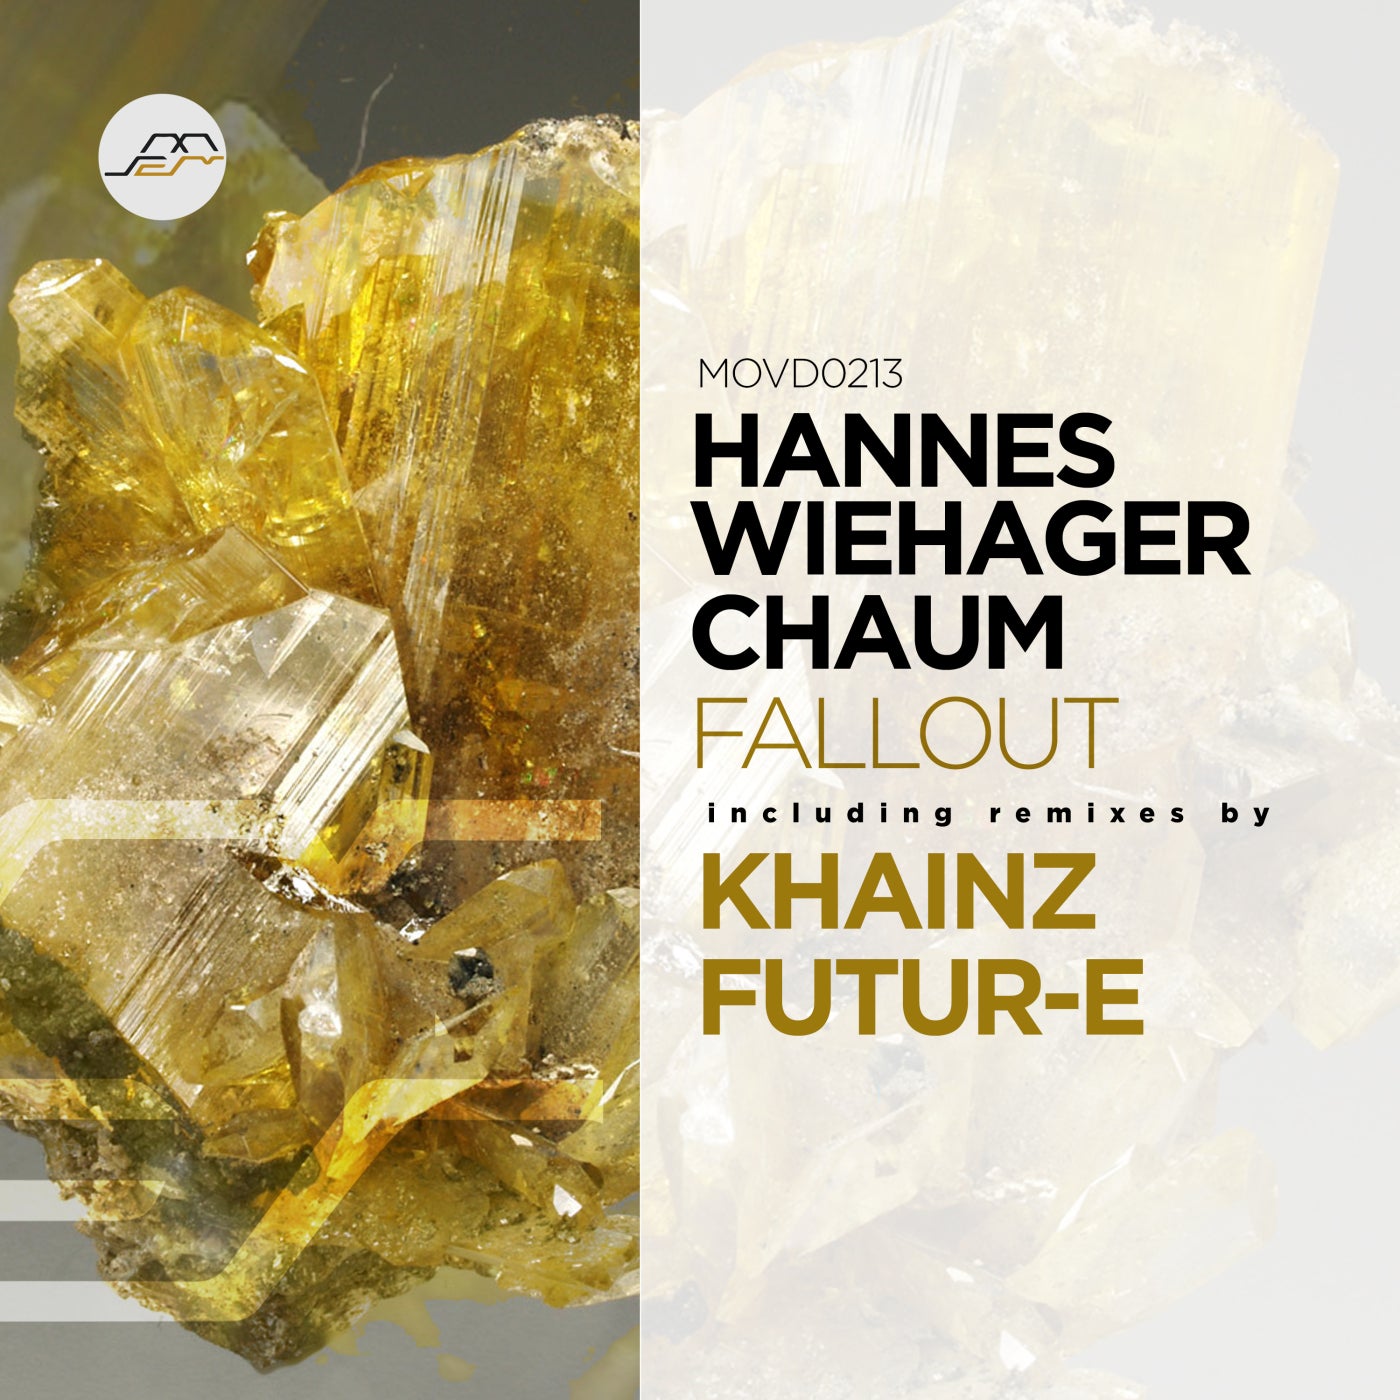 Chaum, Hannes Wiehager - Heliodore (Original Mix)